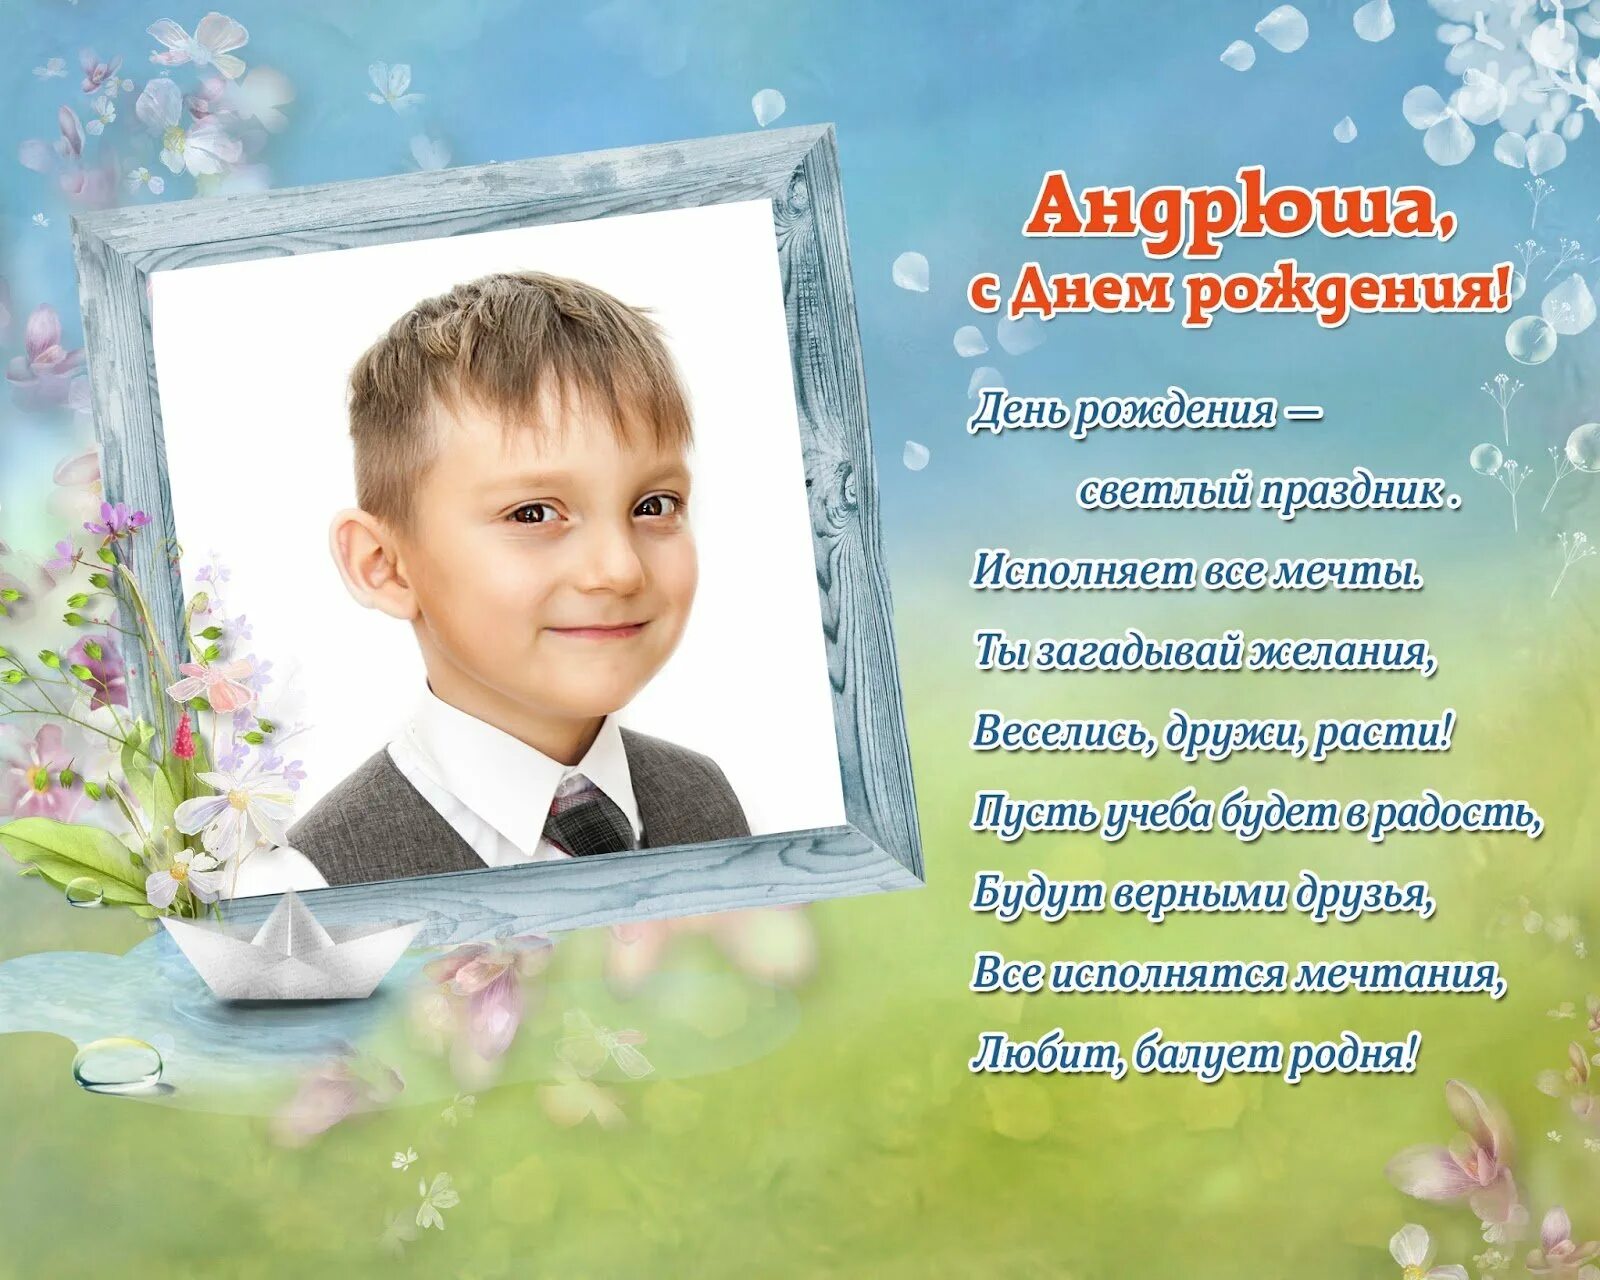 С днем рождения андрюша мальчику. Открытка для фотографии для мальчика. Поздравления с днём рождения мальчику Андрею. Поздравления с днём рождения сына Андрея.